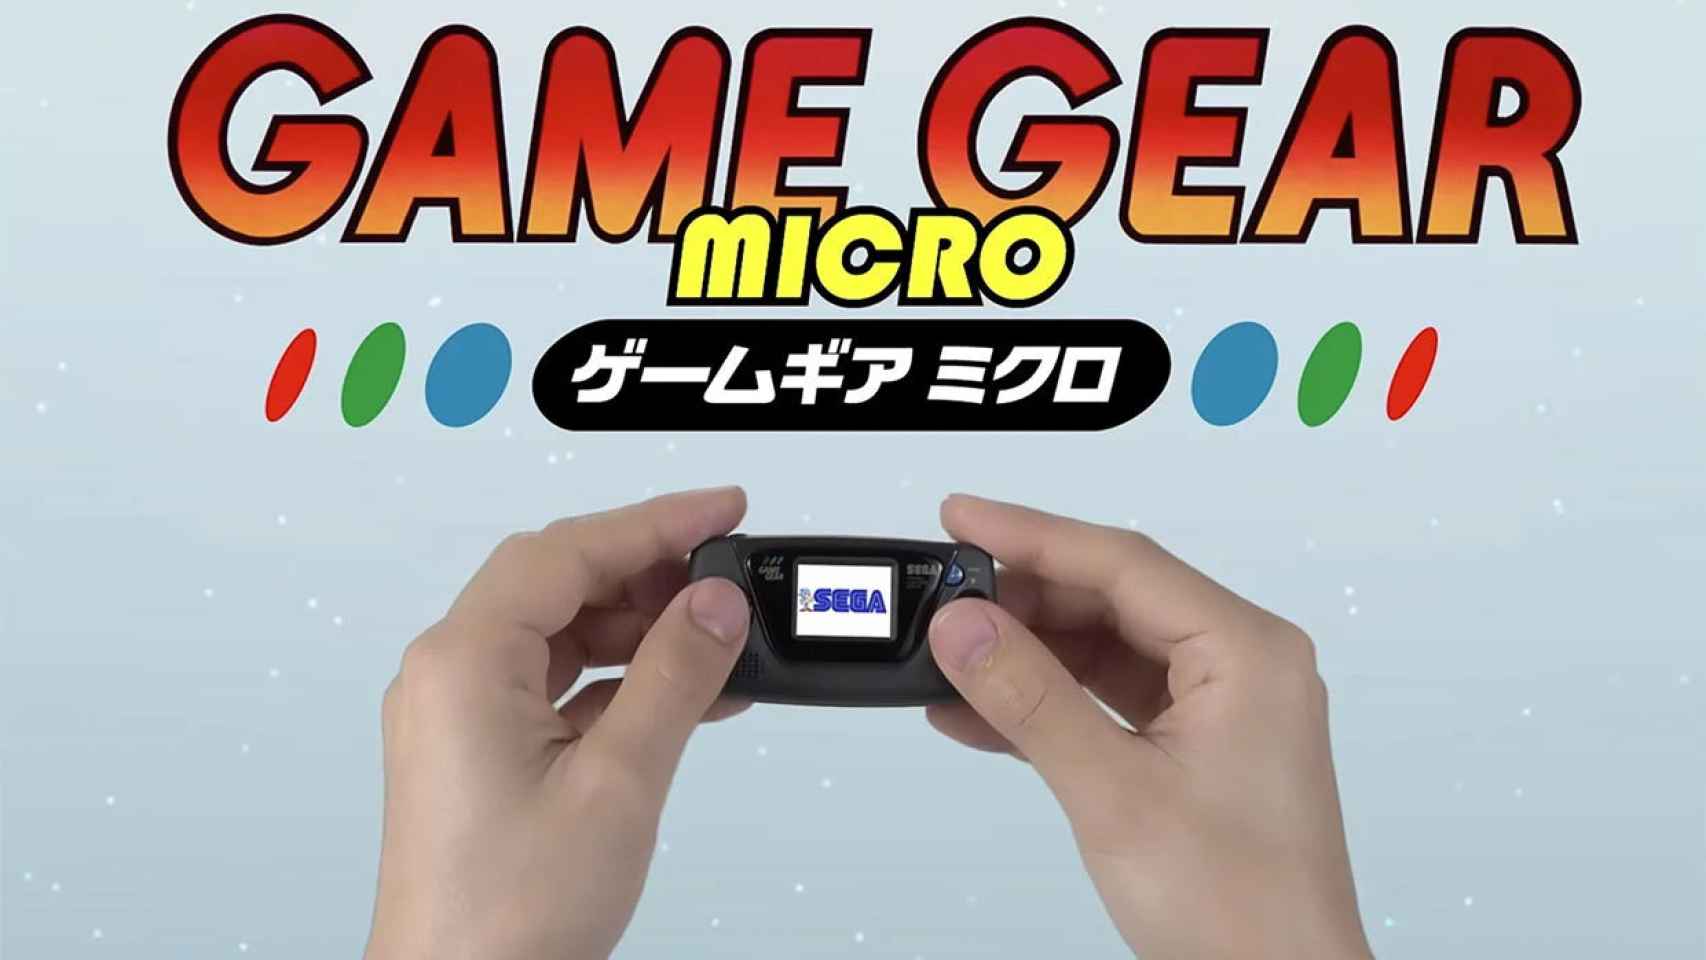 El ridículo tamaño de la Sega Game Gear Micro